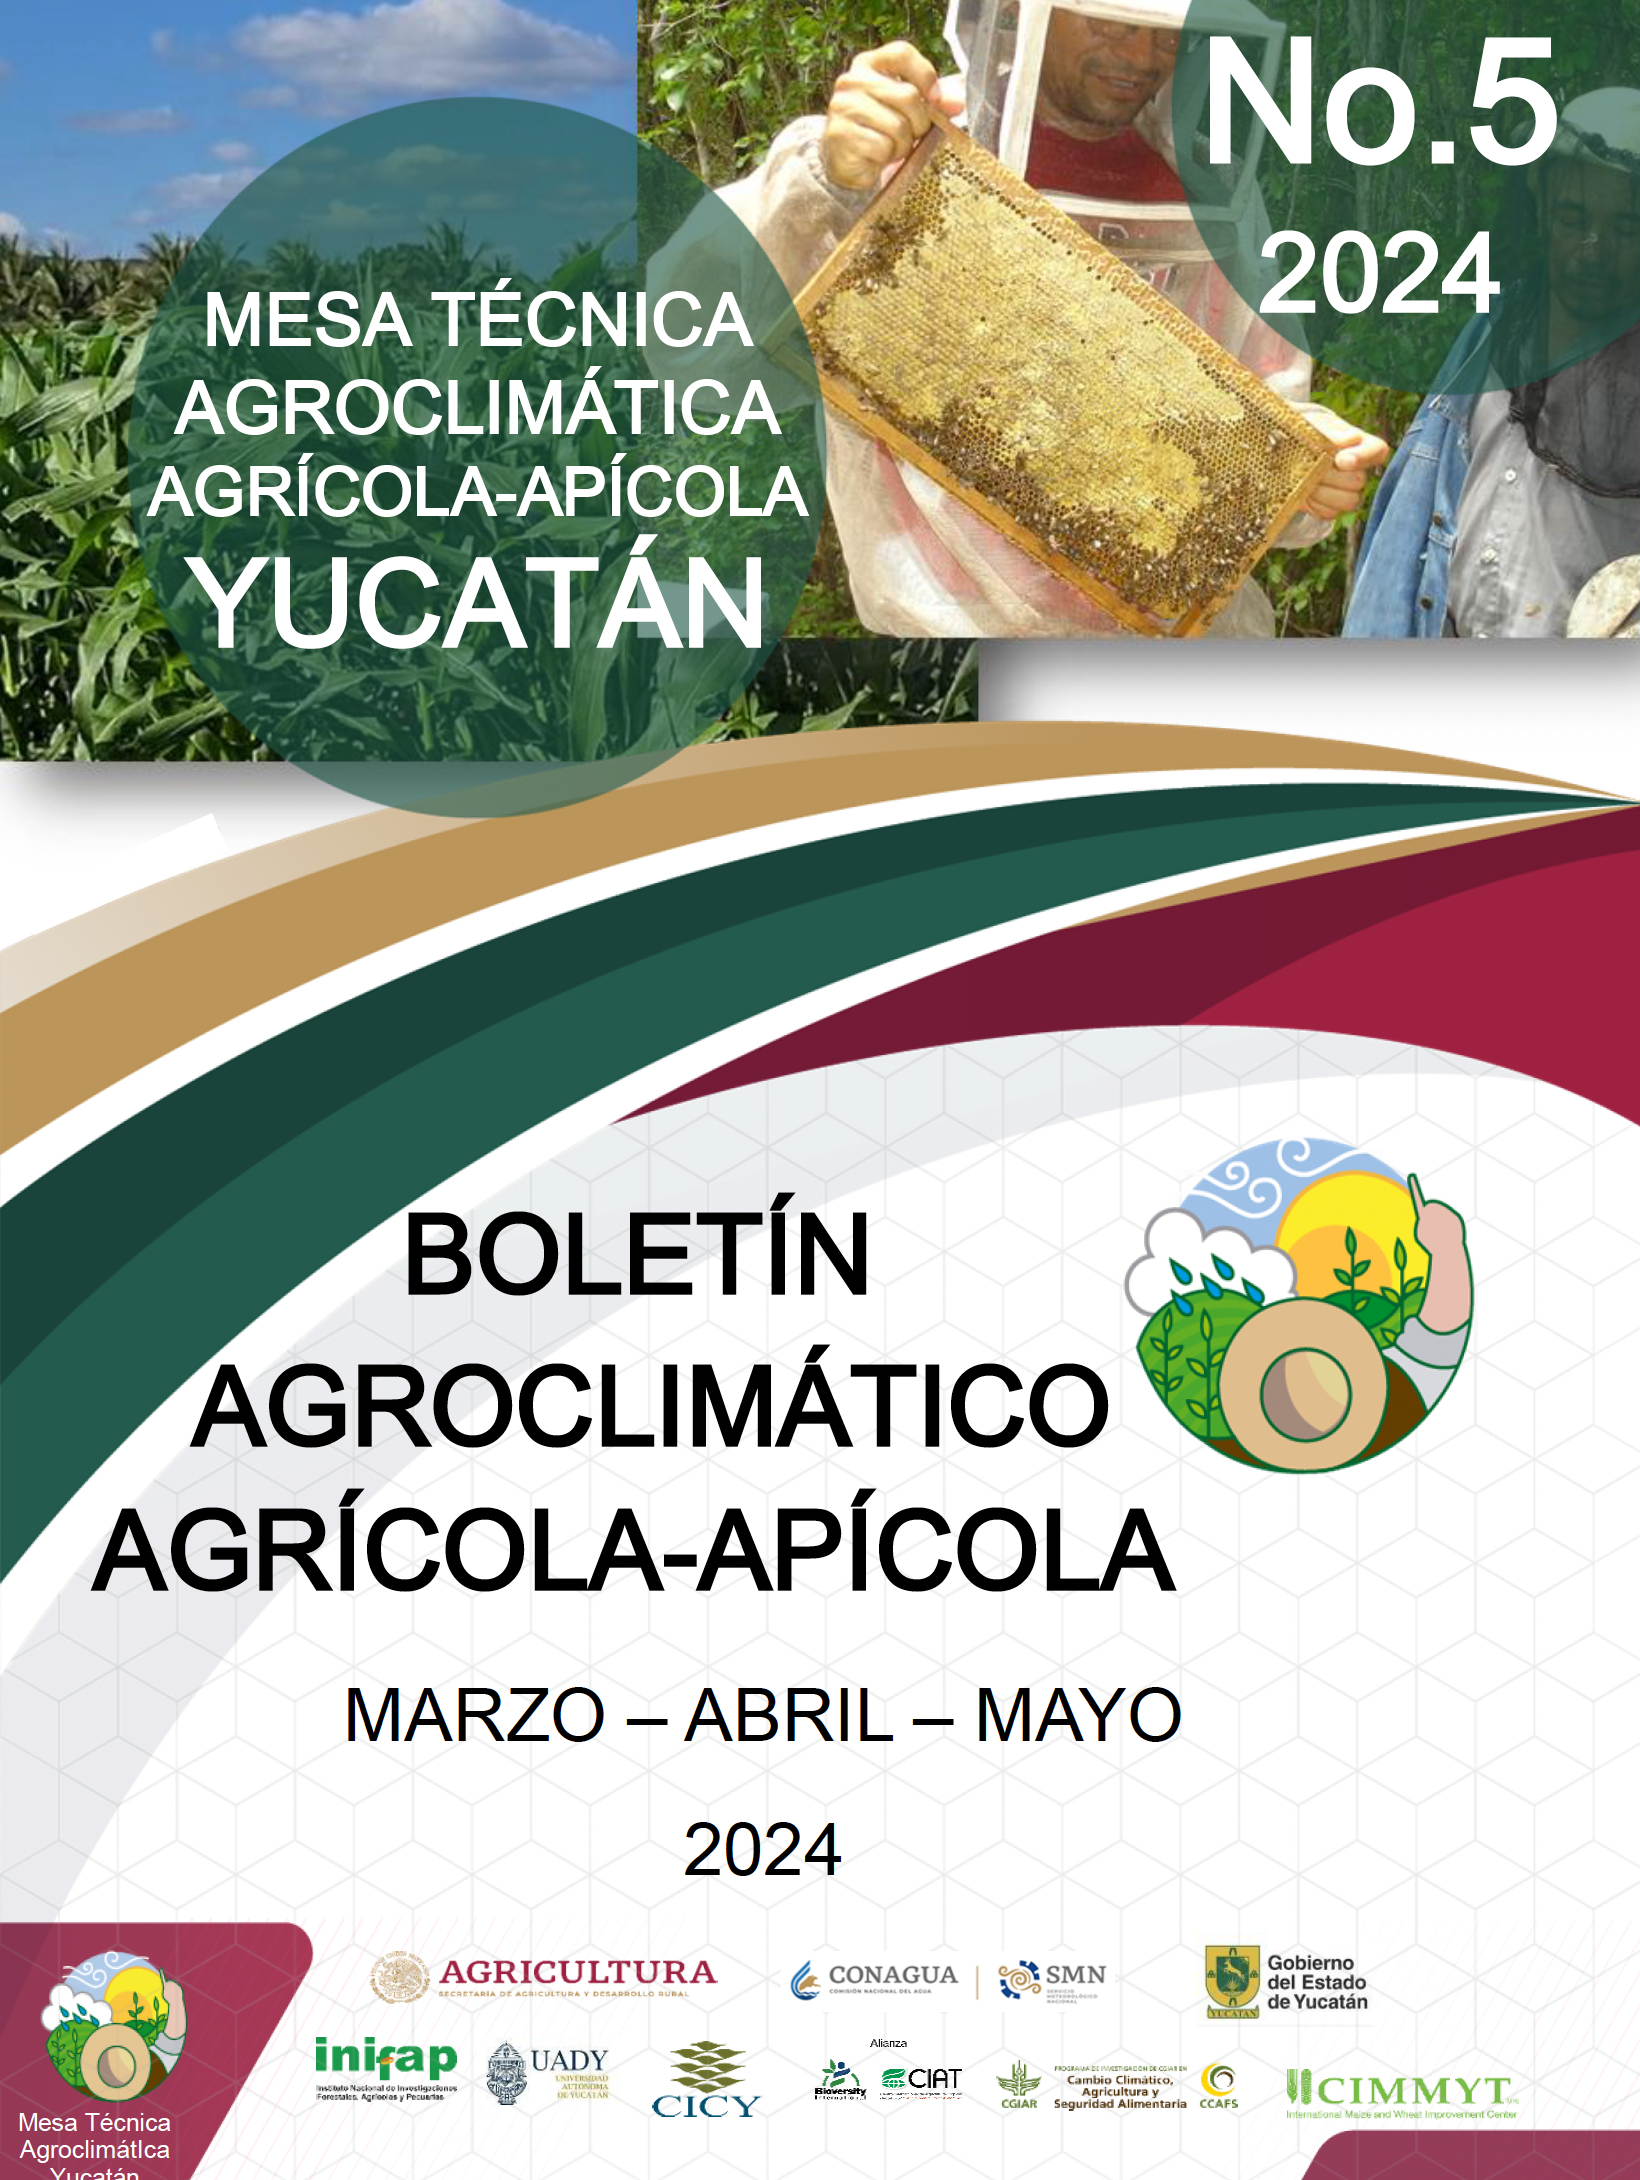 Boletín Agroclimático Apícola-Apícola de Yucatán, marzo-mayo 2024. CLIC EN LA IMAGEN PARA DESCARGAR